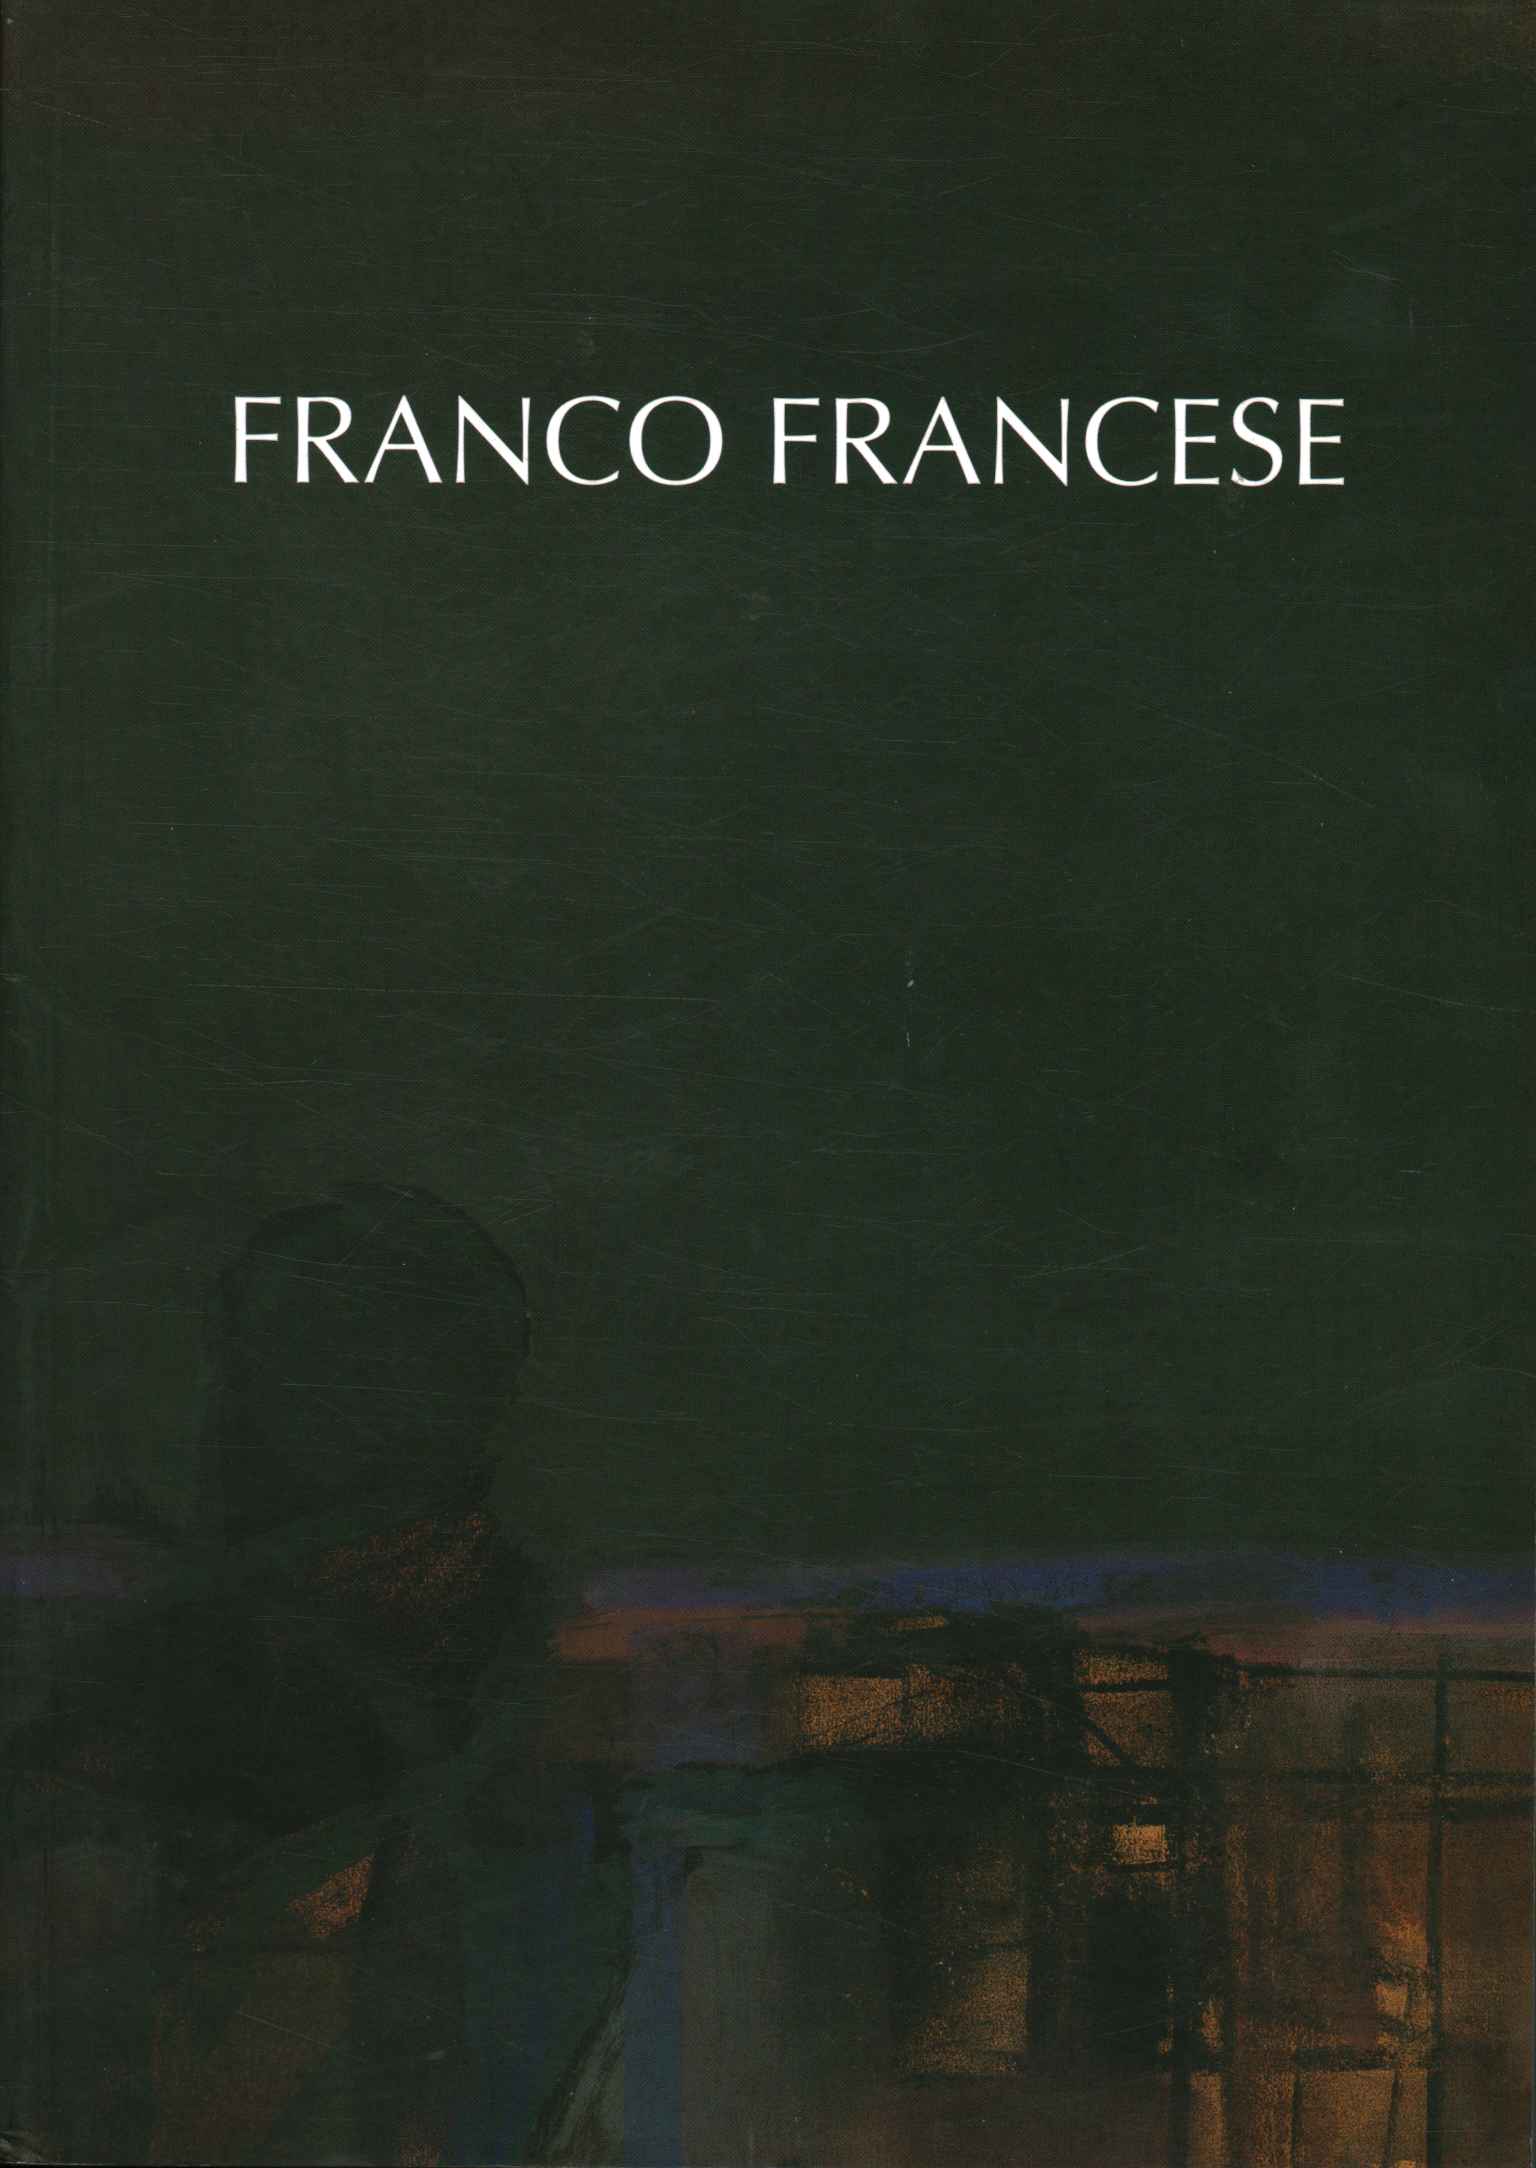 Franco français